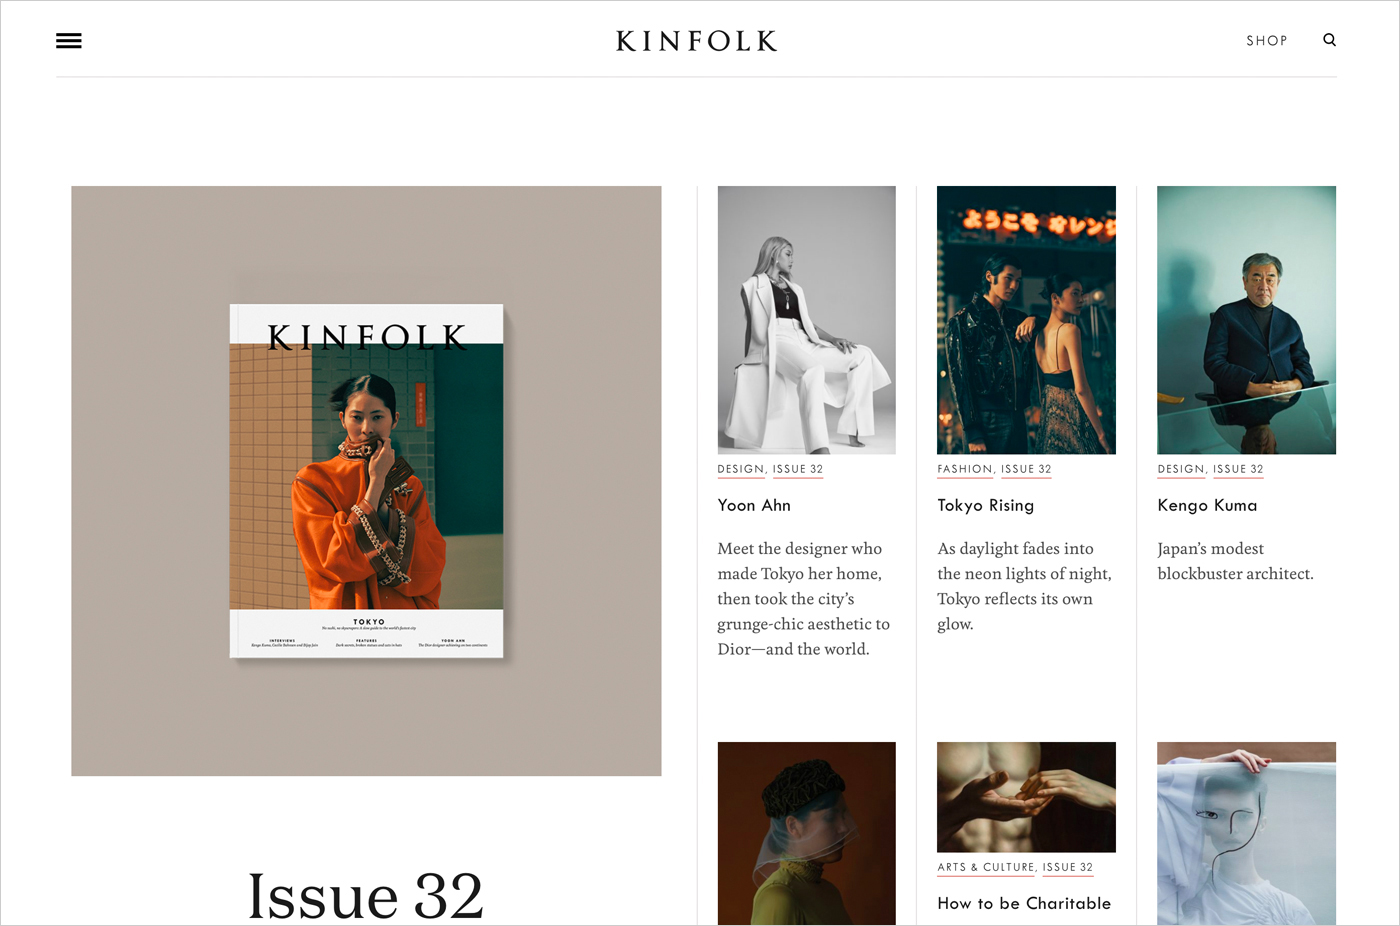 Kinfolkウェブサイトの画面キャプチャ画像